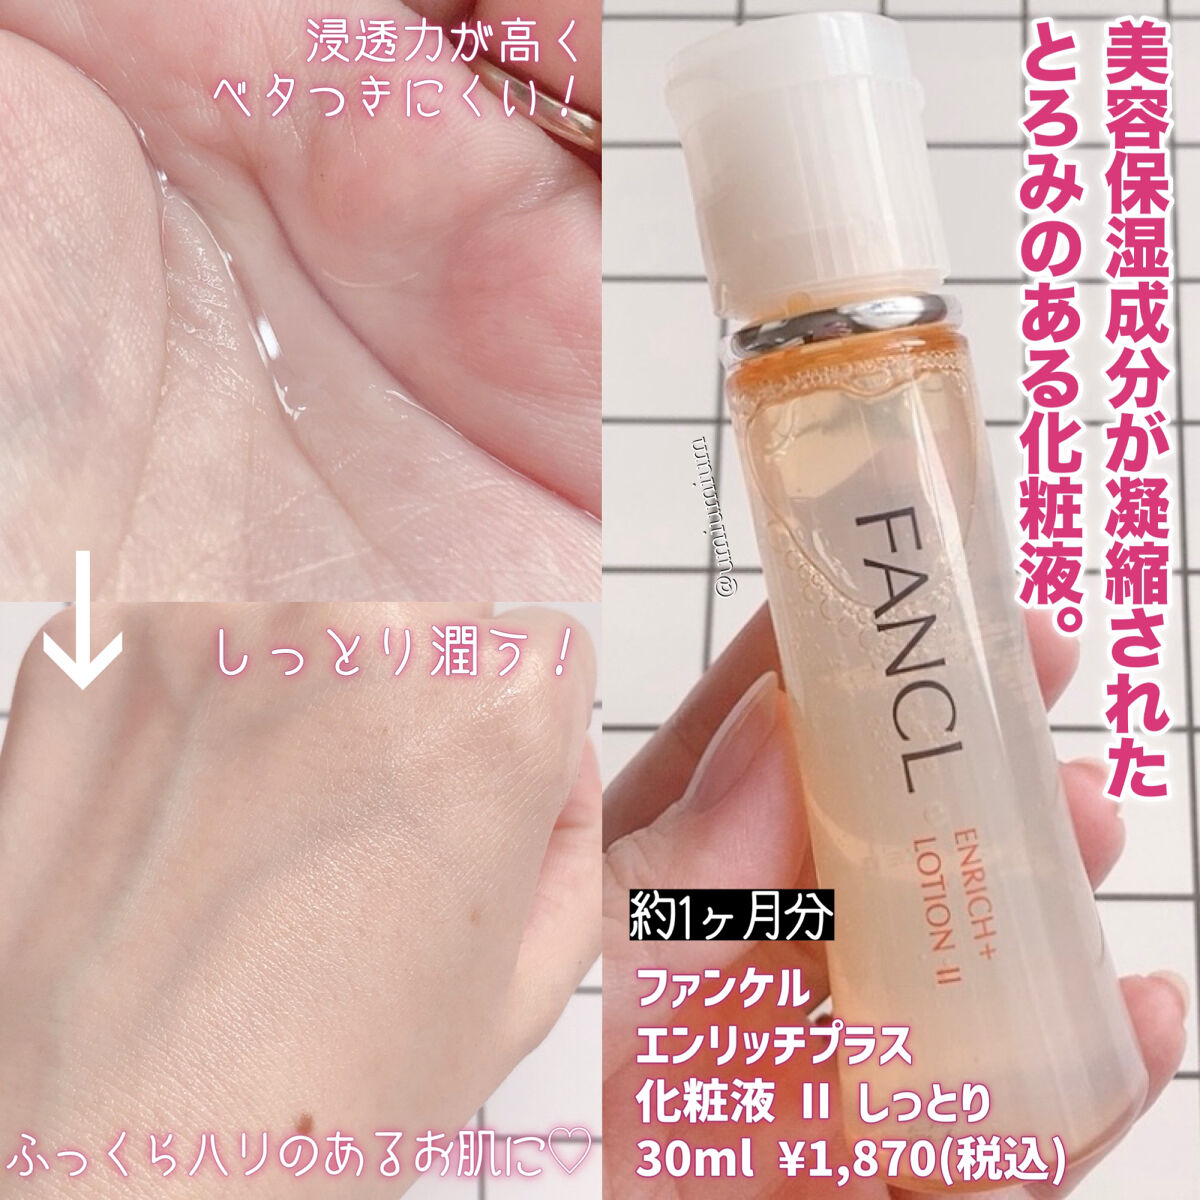 化粧水ファンケル ホワイトニング 化粧液&乳液 II しっとり(30ml)